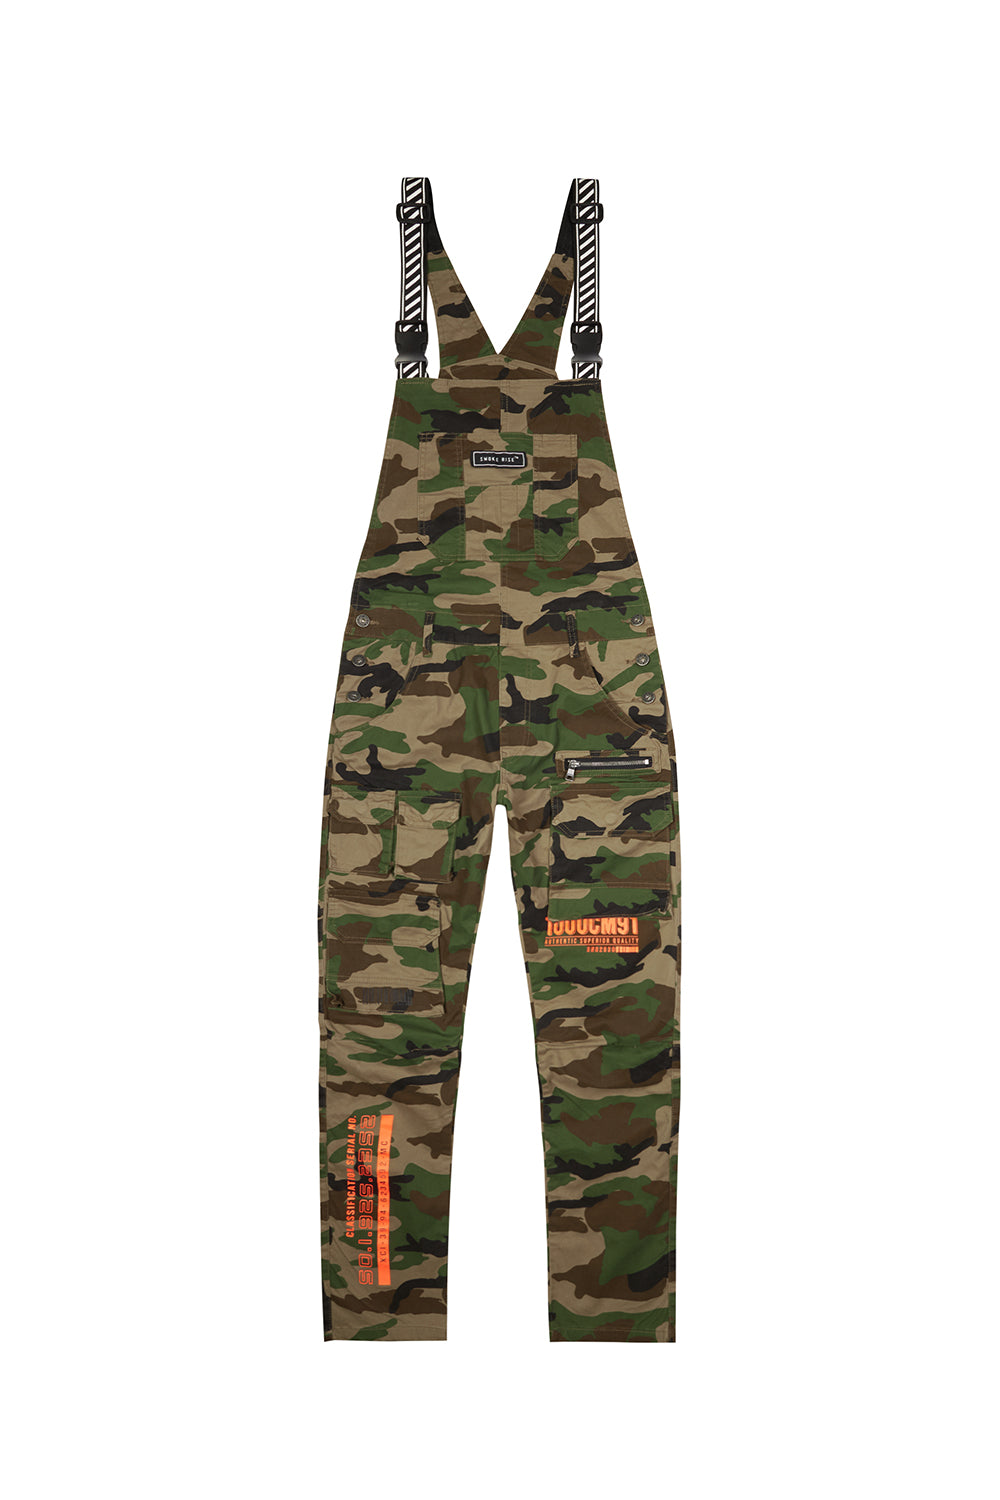 supreme camo overalls